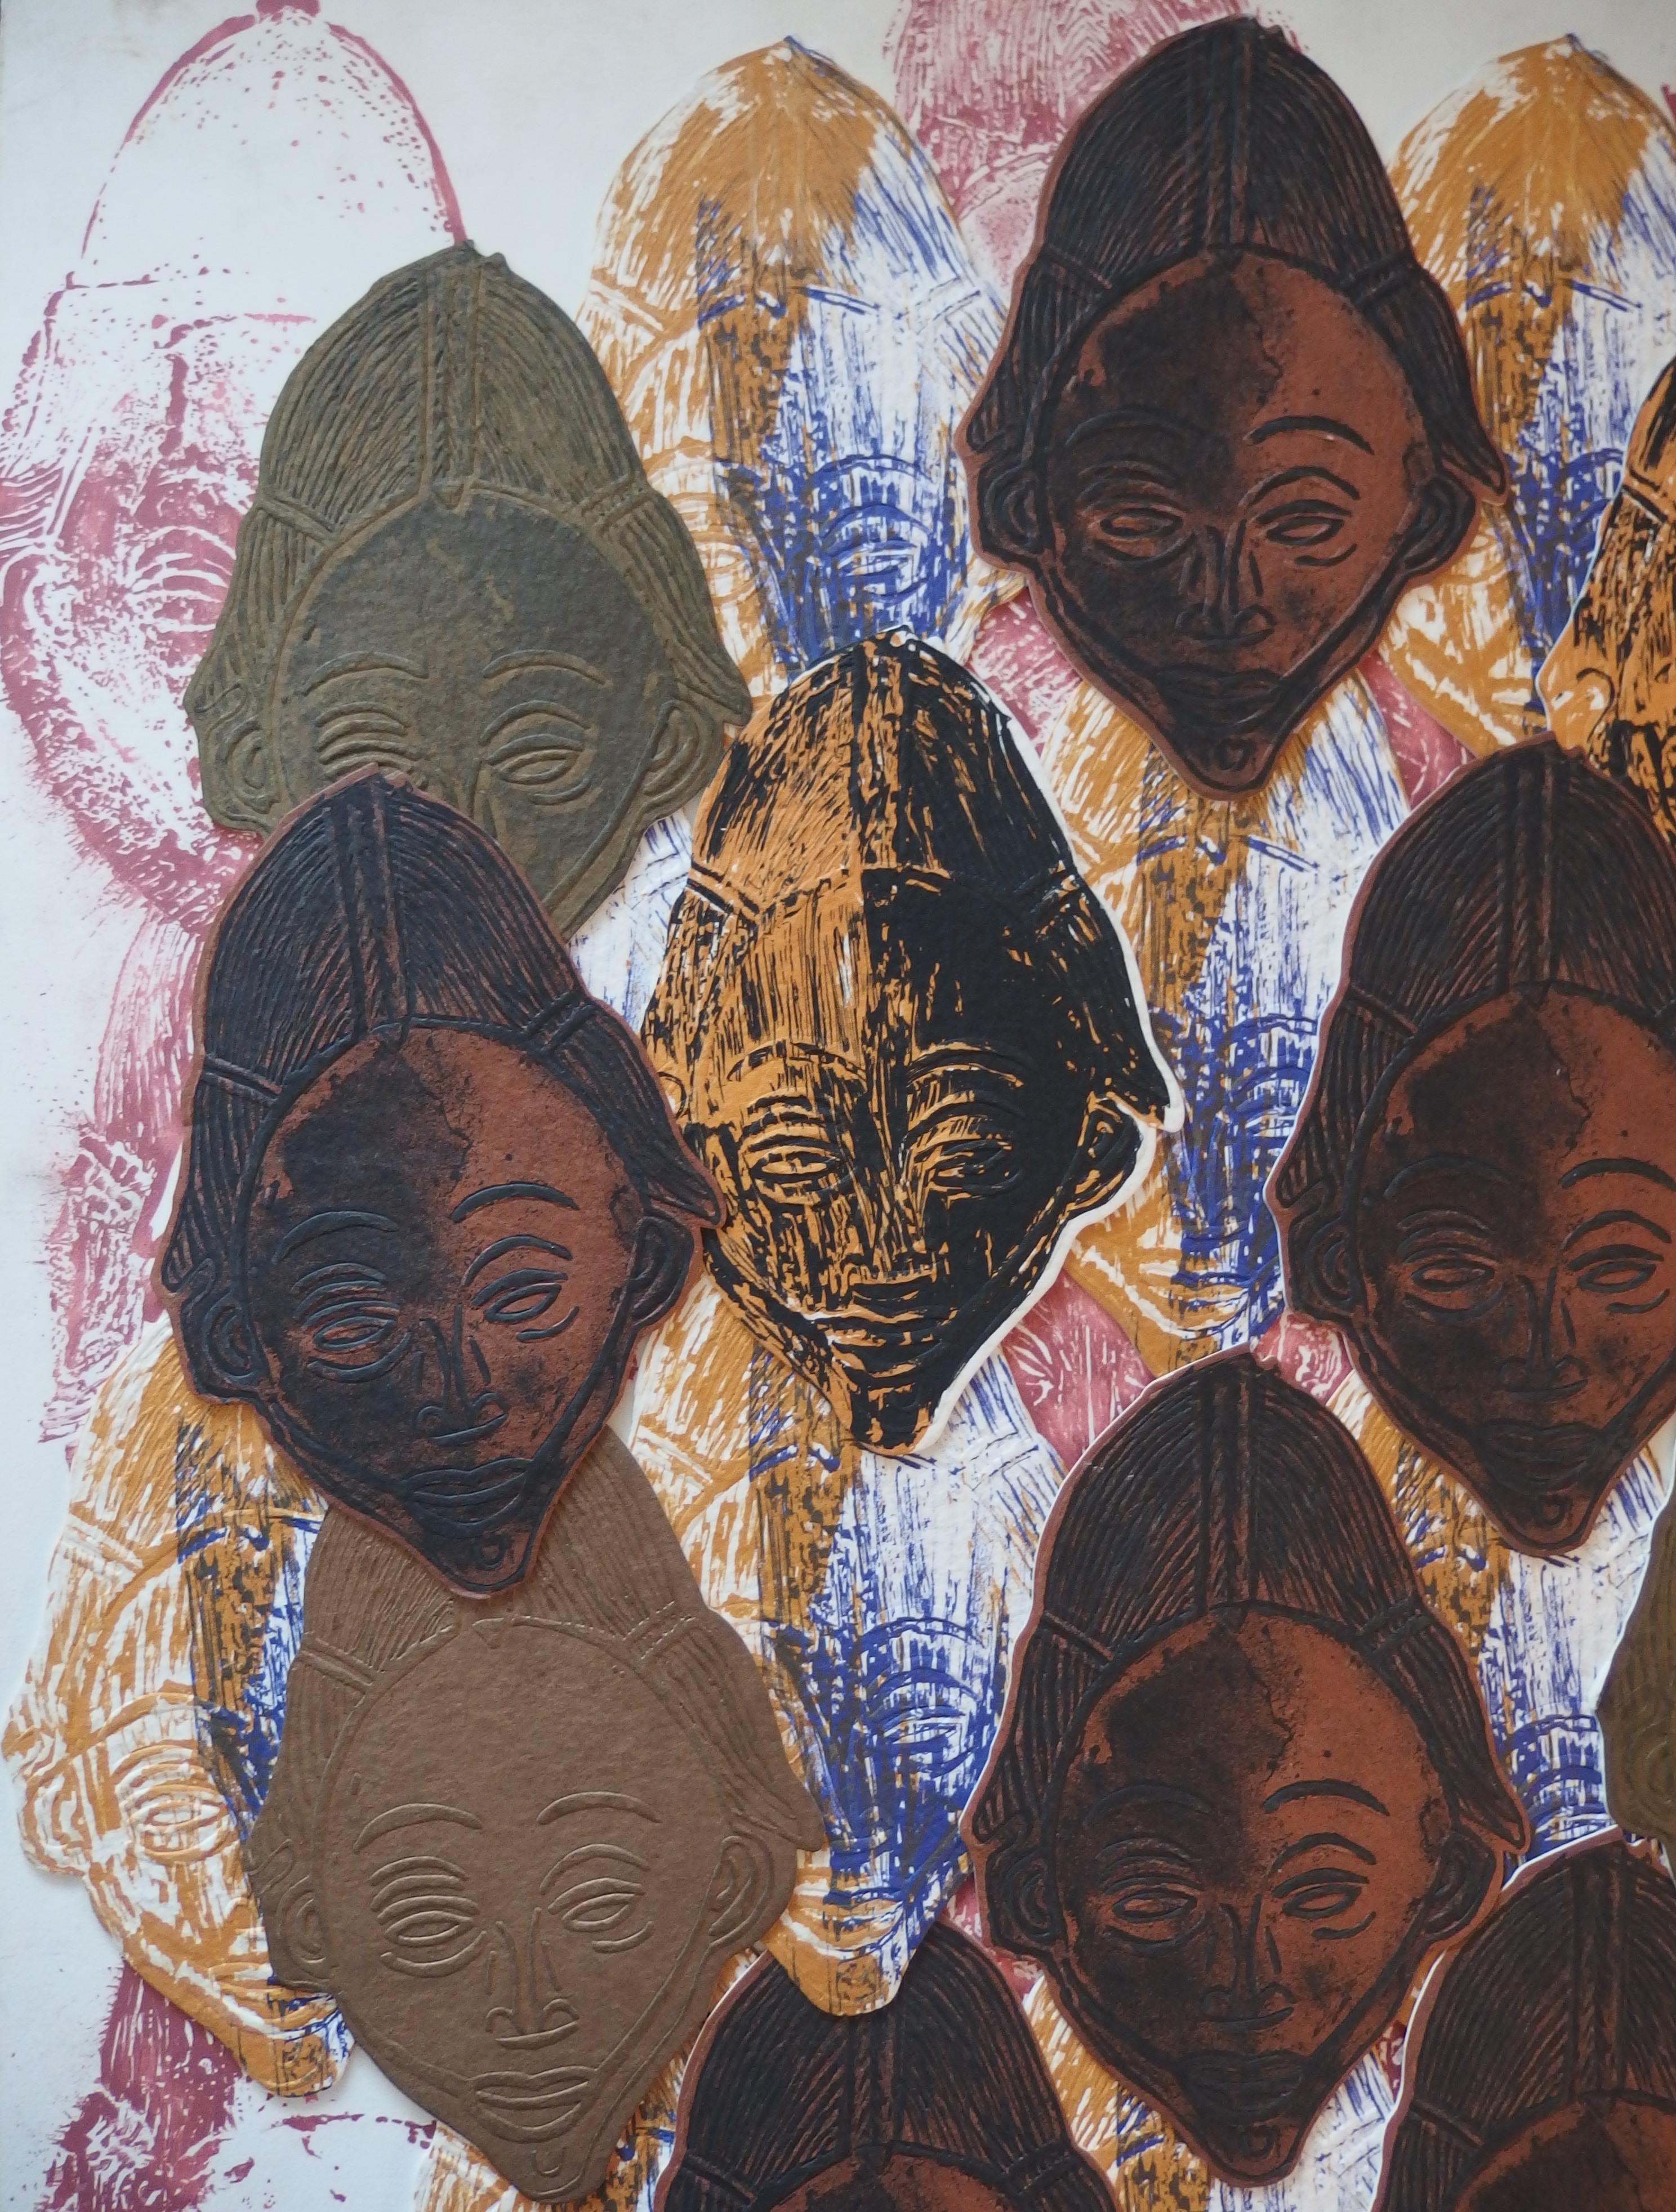 Arman (Arman Fernandez, appelé)
Accumulation de masques africains

Collage original / collage d'éléments lithographiques
Signé à la main au crayon
Sur carton 78 x 61 cm (c. 31 x 24 in)
En 1998, Arman a créé un ensemble de 99 collages différents avec